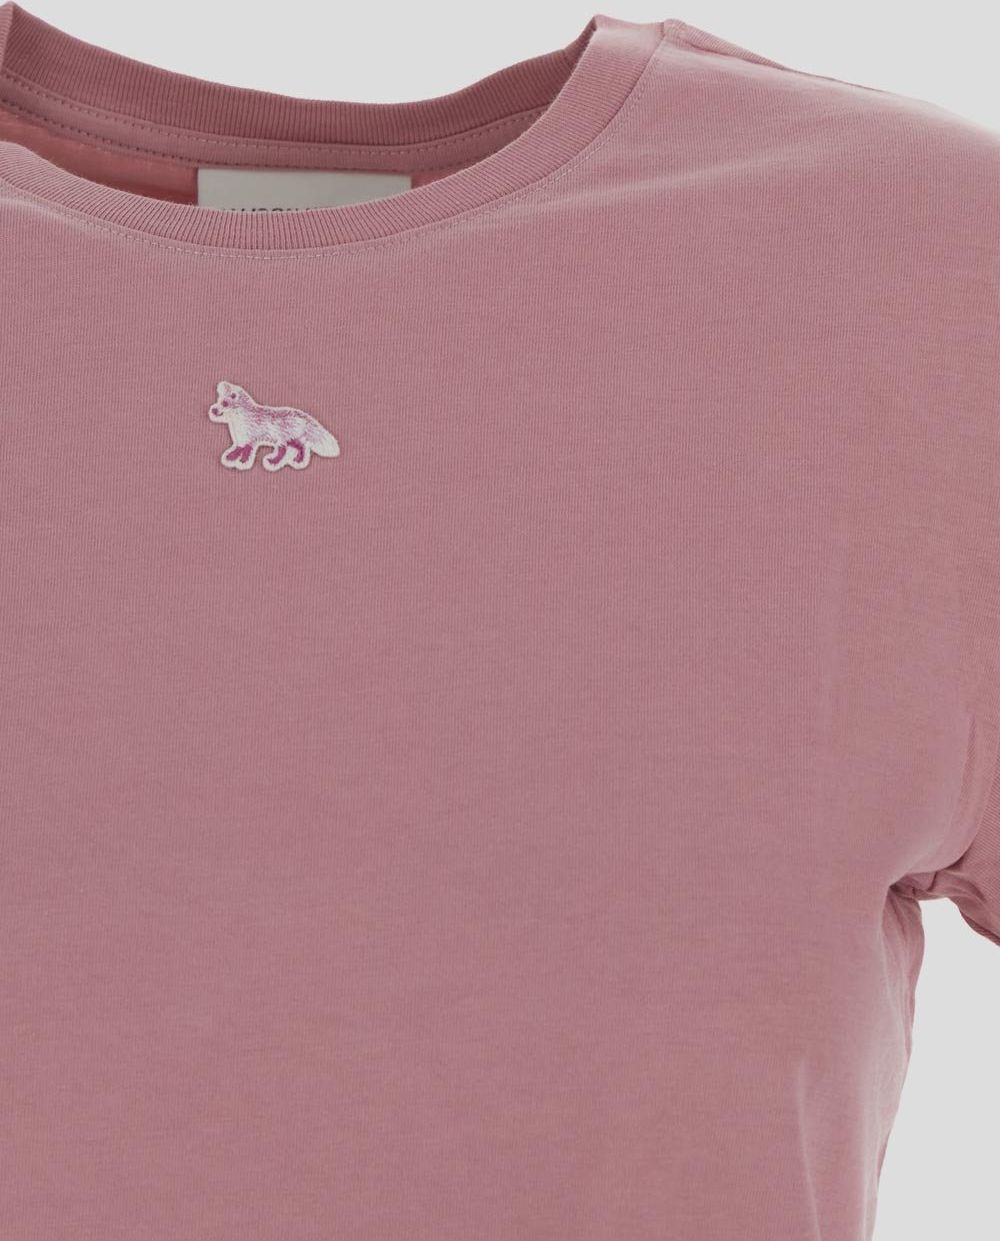 Maison Kitsuné Fox T-Shirt Roze